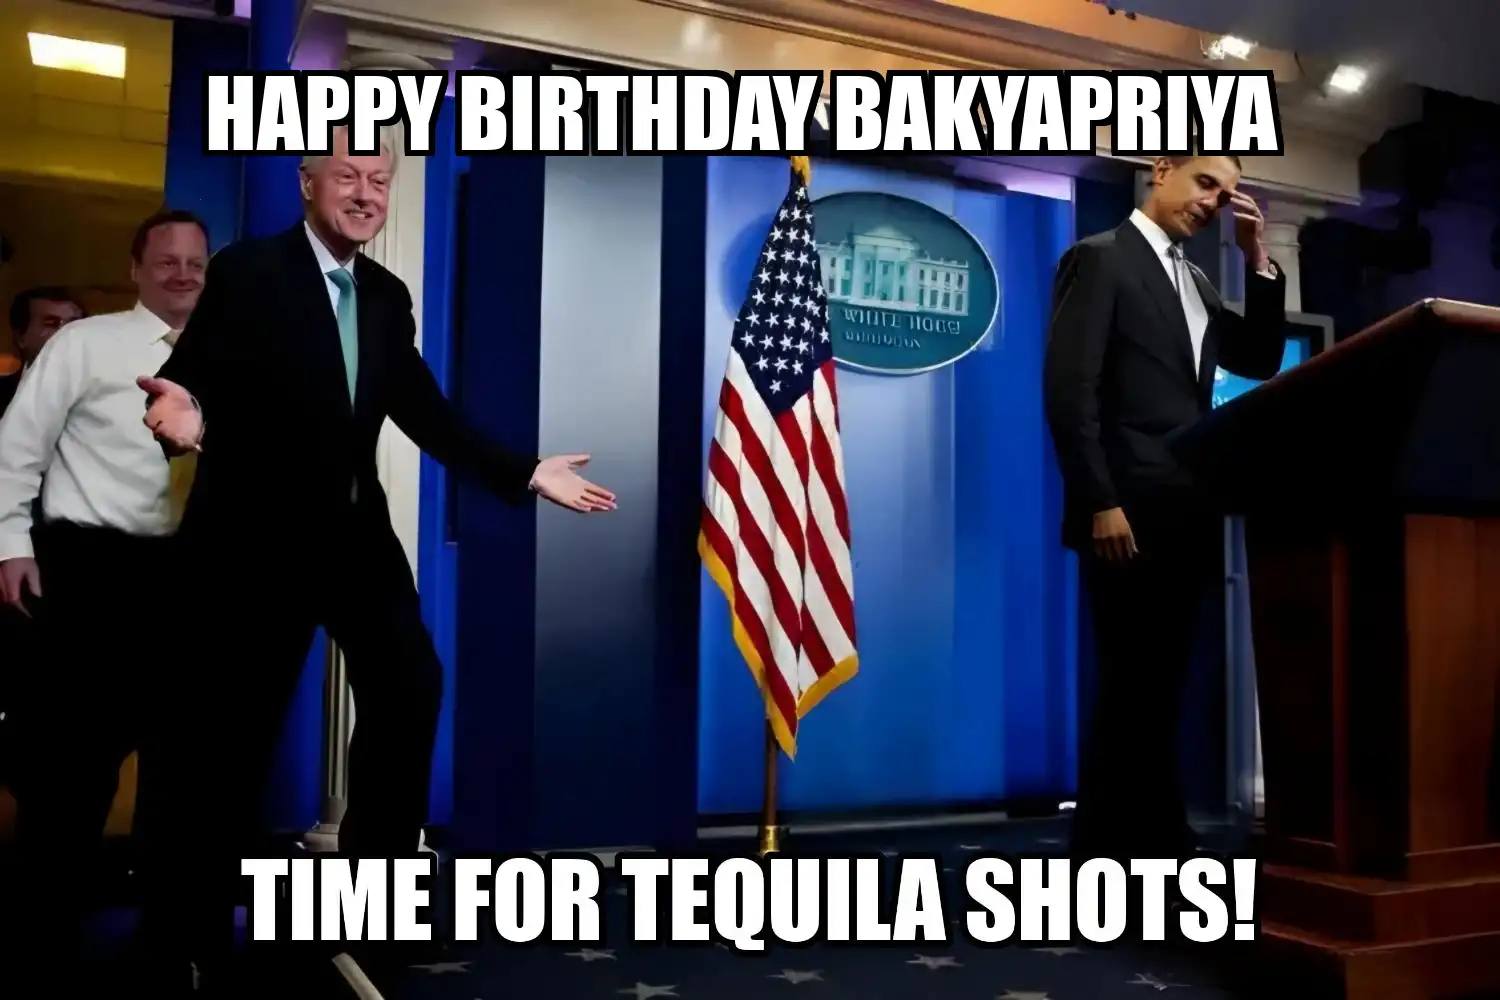 Happy Birthday Bakyapriya Time For Tequila Shots Memes